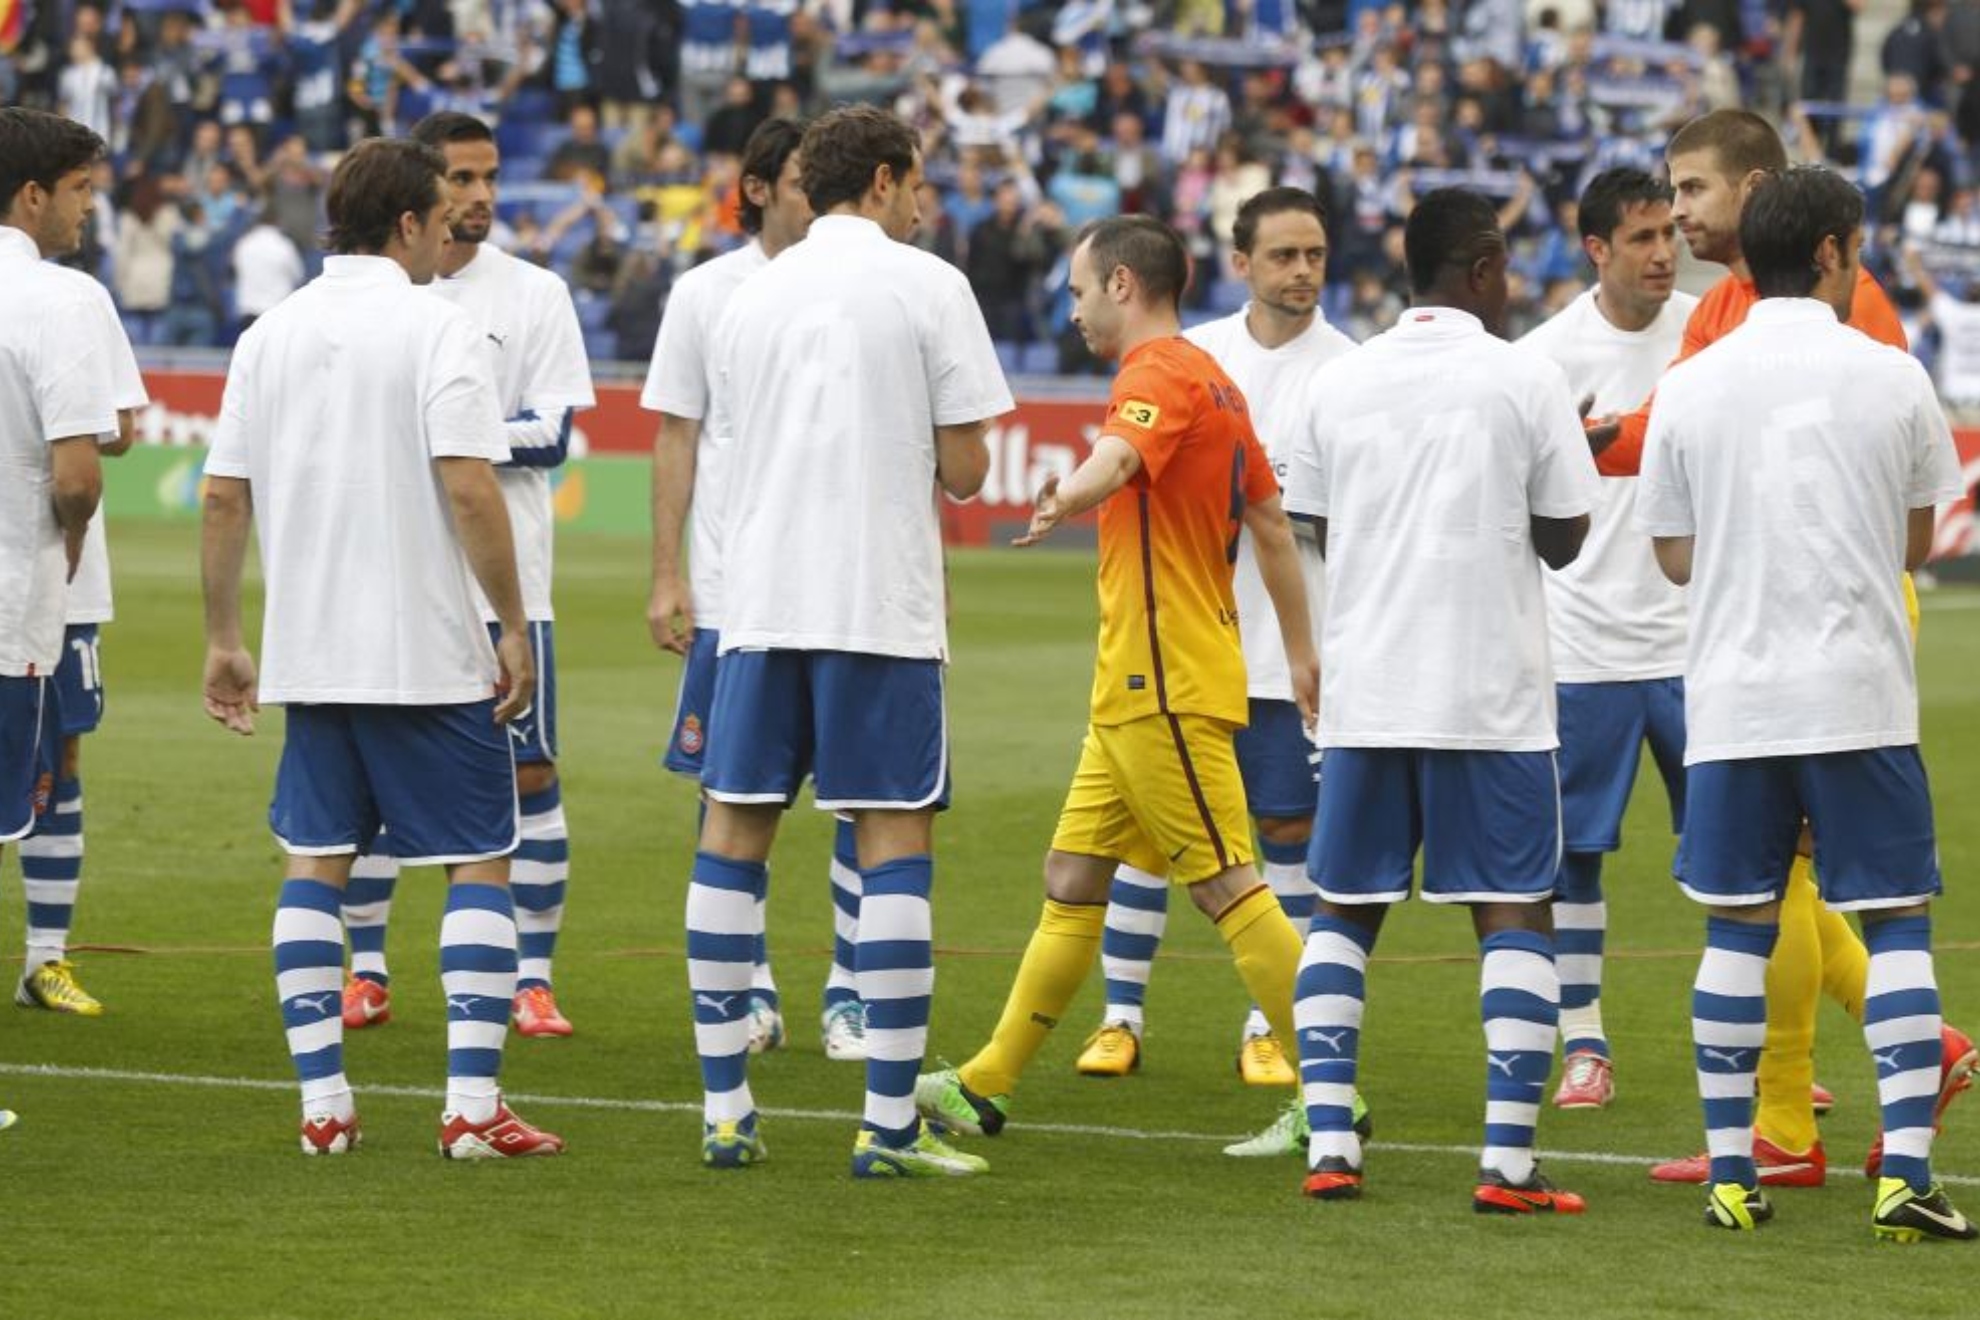 Los jugadores del Espanyol realizando el pasillo al Barcelona en 2013.